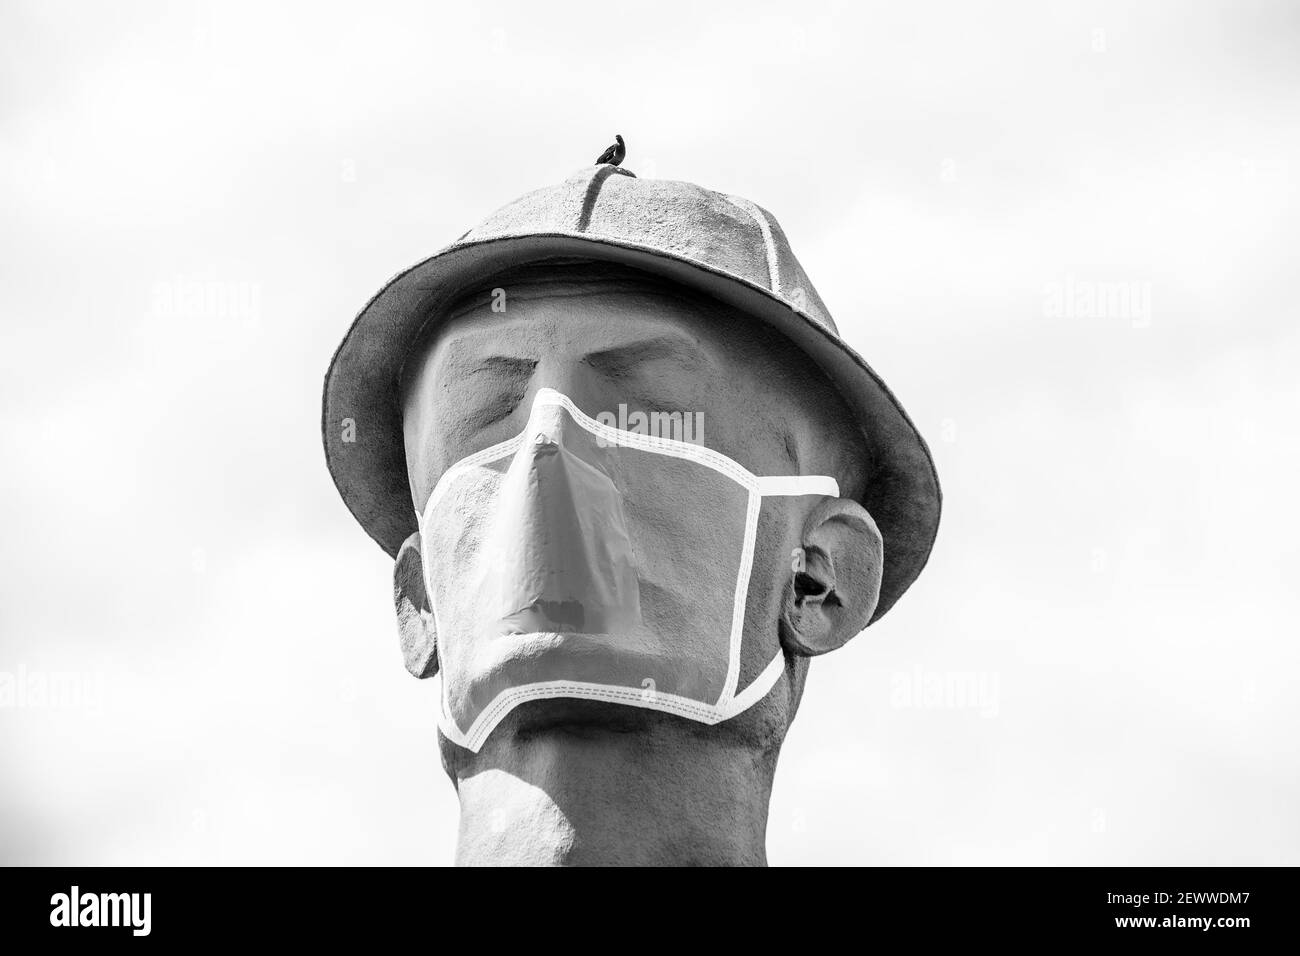 07 09 2020 Tulsa, USA Iconic Golden Driller - riesige Statue eines Ölfeldarbeiters in der Nähe der Route 66 in Oklahoma mit Gesichtsmaske während einer Pandemie - Nahaufnahme Stockfoto